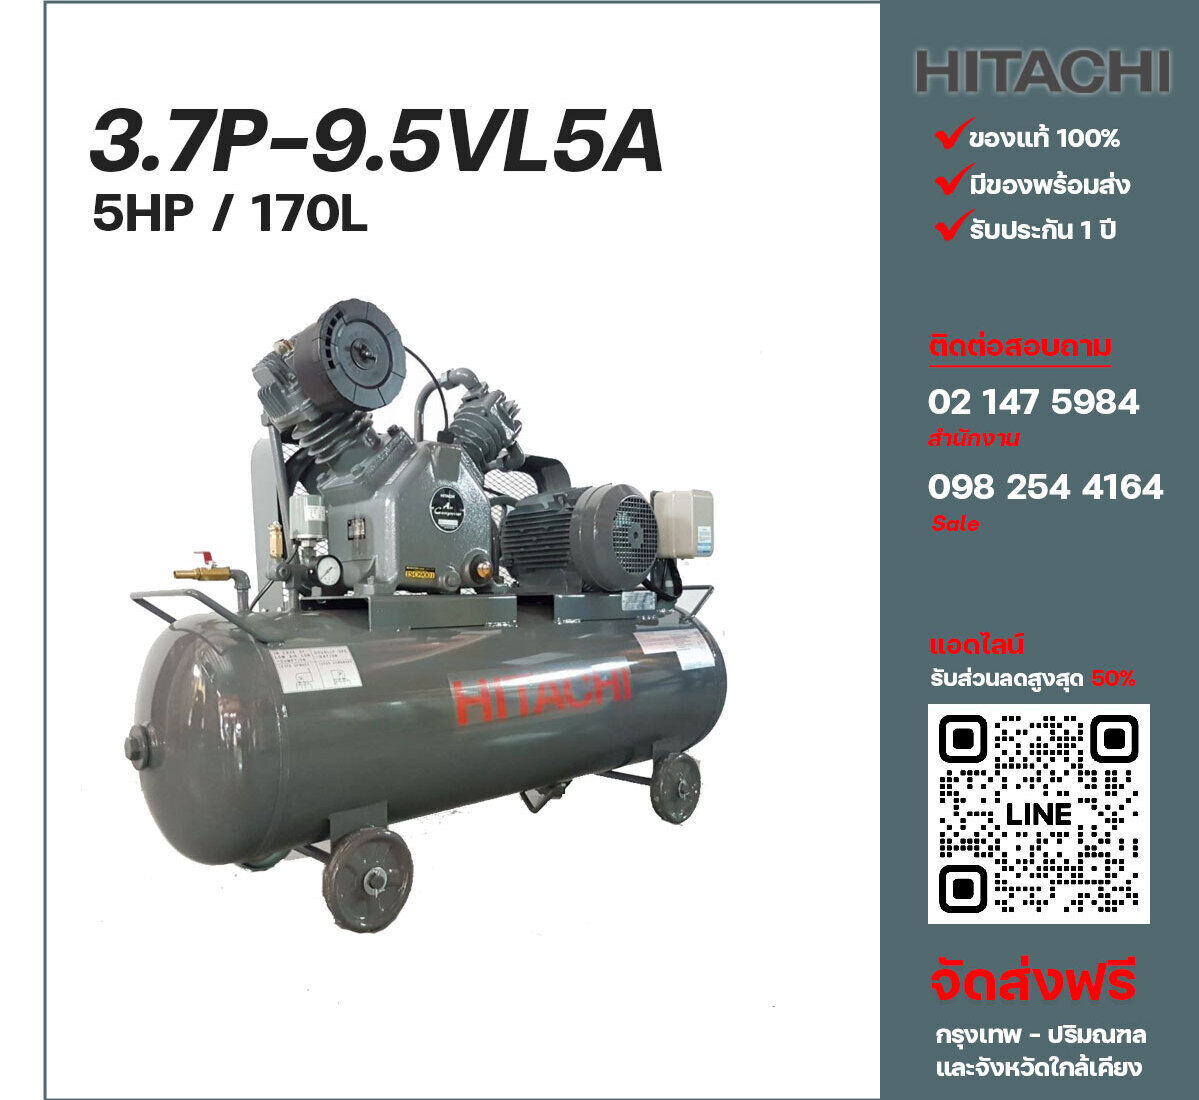 ปั๊มลมฮิตาชิ HITACHI รุ่นใช้น้ำมัน 3.7P-9.5VL5A380V ปั๊มลมลูกสูบ ขนาด 2 สูบ 5 แรงม้า 170 ลิตร Hitachi พร้อมมอเตอร์ Hitachi ไฟ 380V ส่งฟรี กรุงเทพฯ-ปริมณฑล รับประกัน 1 ปี